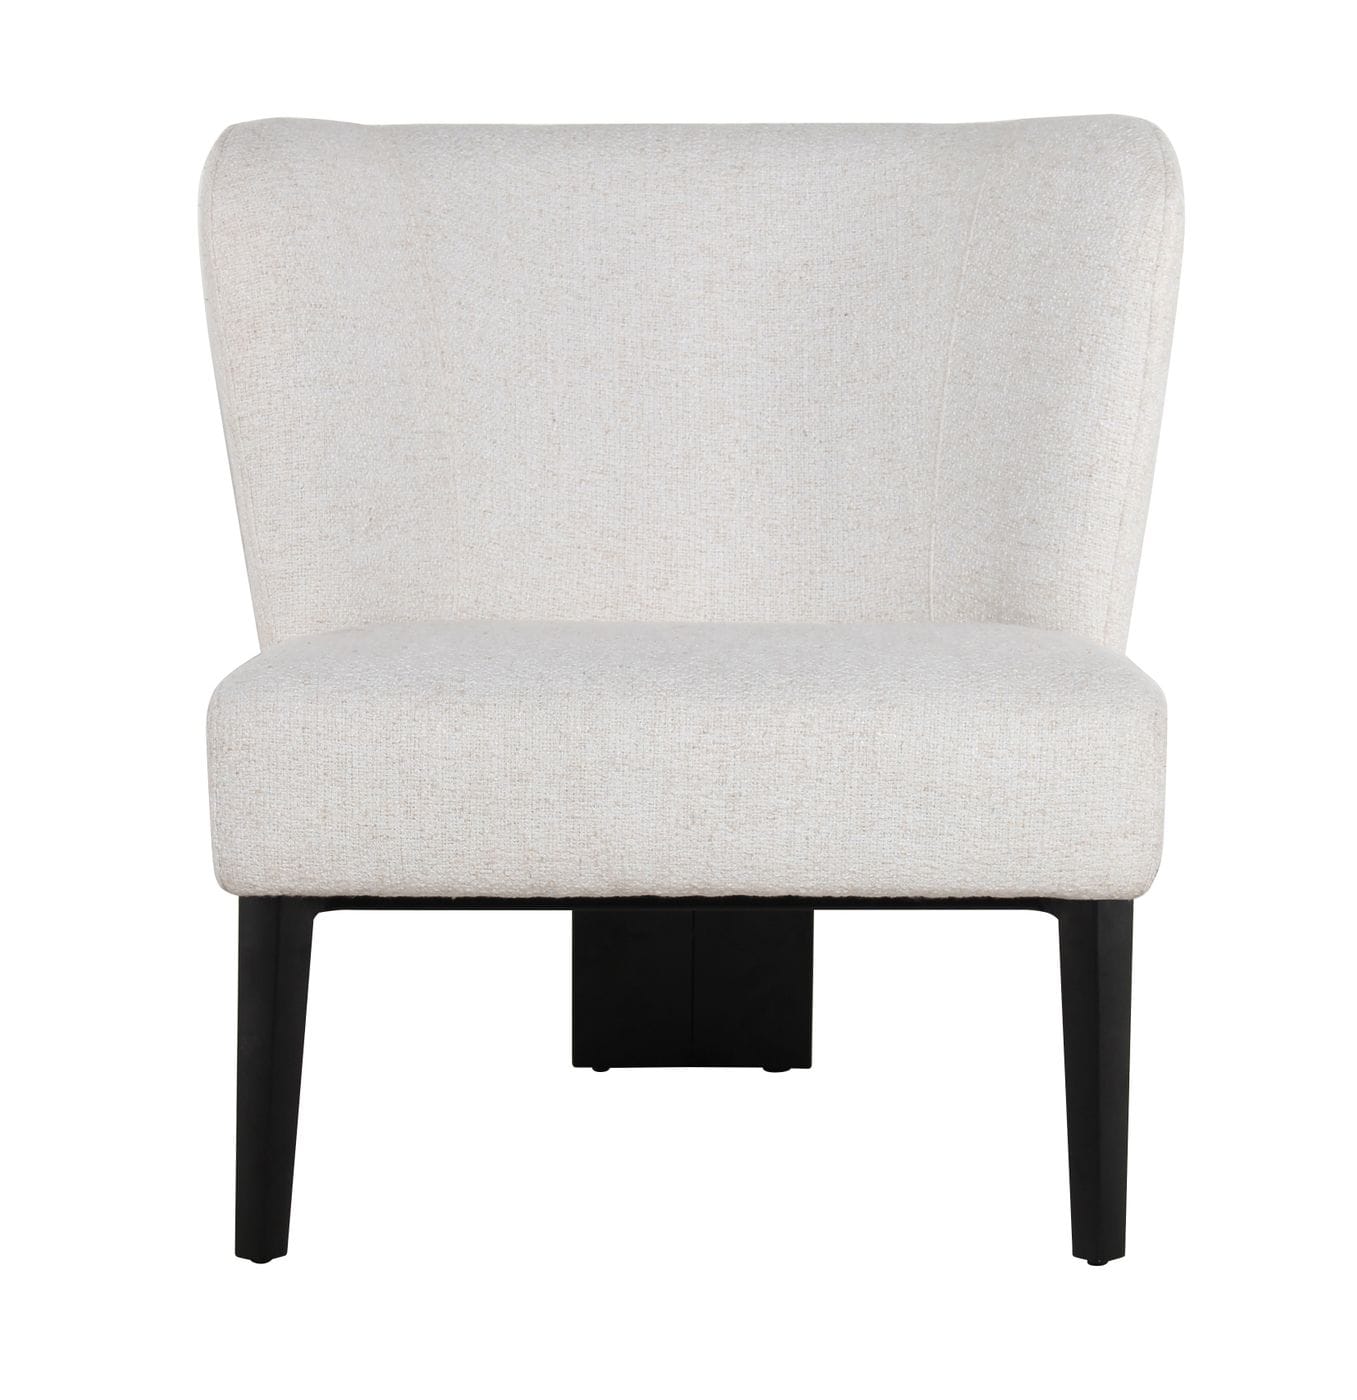 Divani Casa Ladean - Modern White Accent Chair | Lounge Chairs | Modishstore